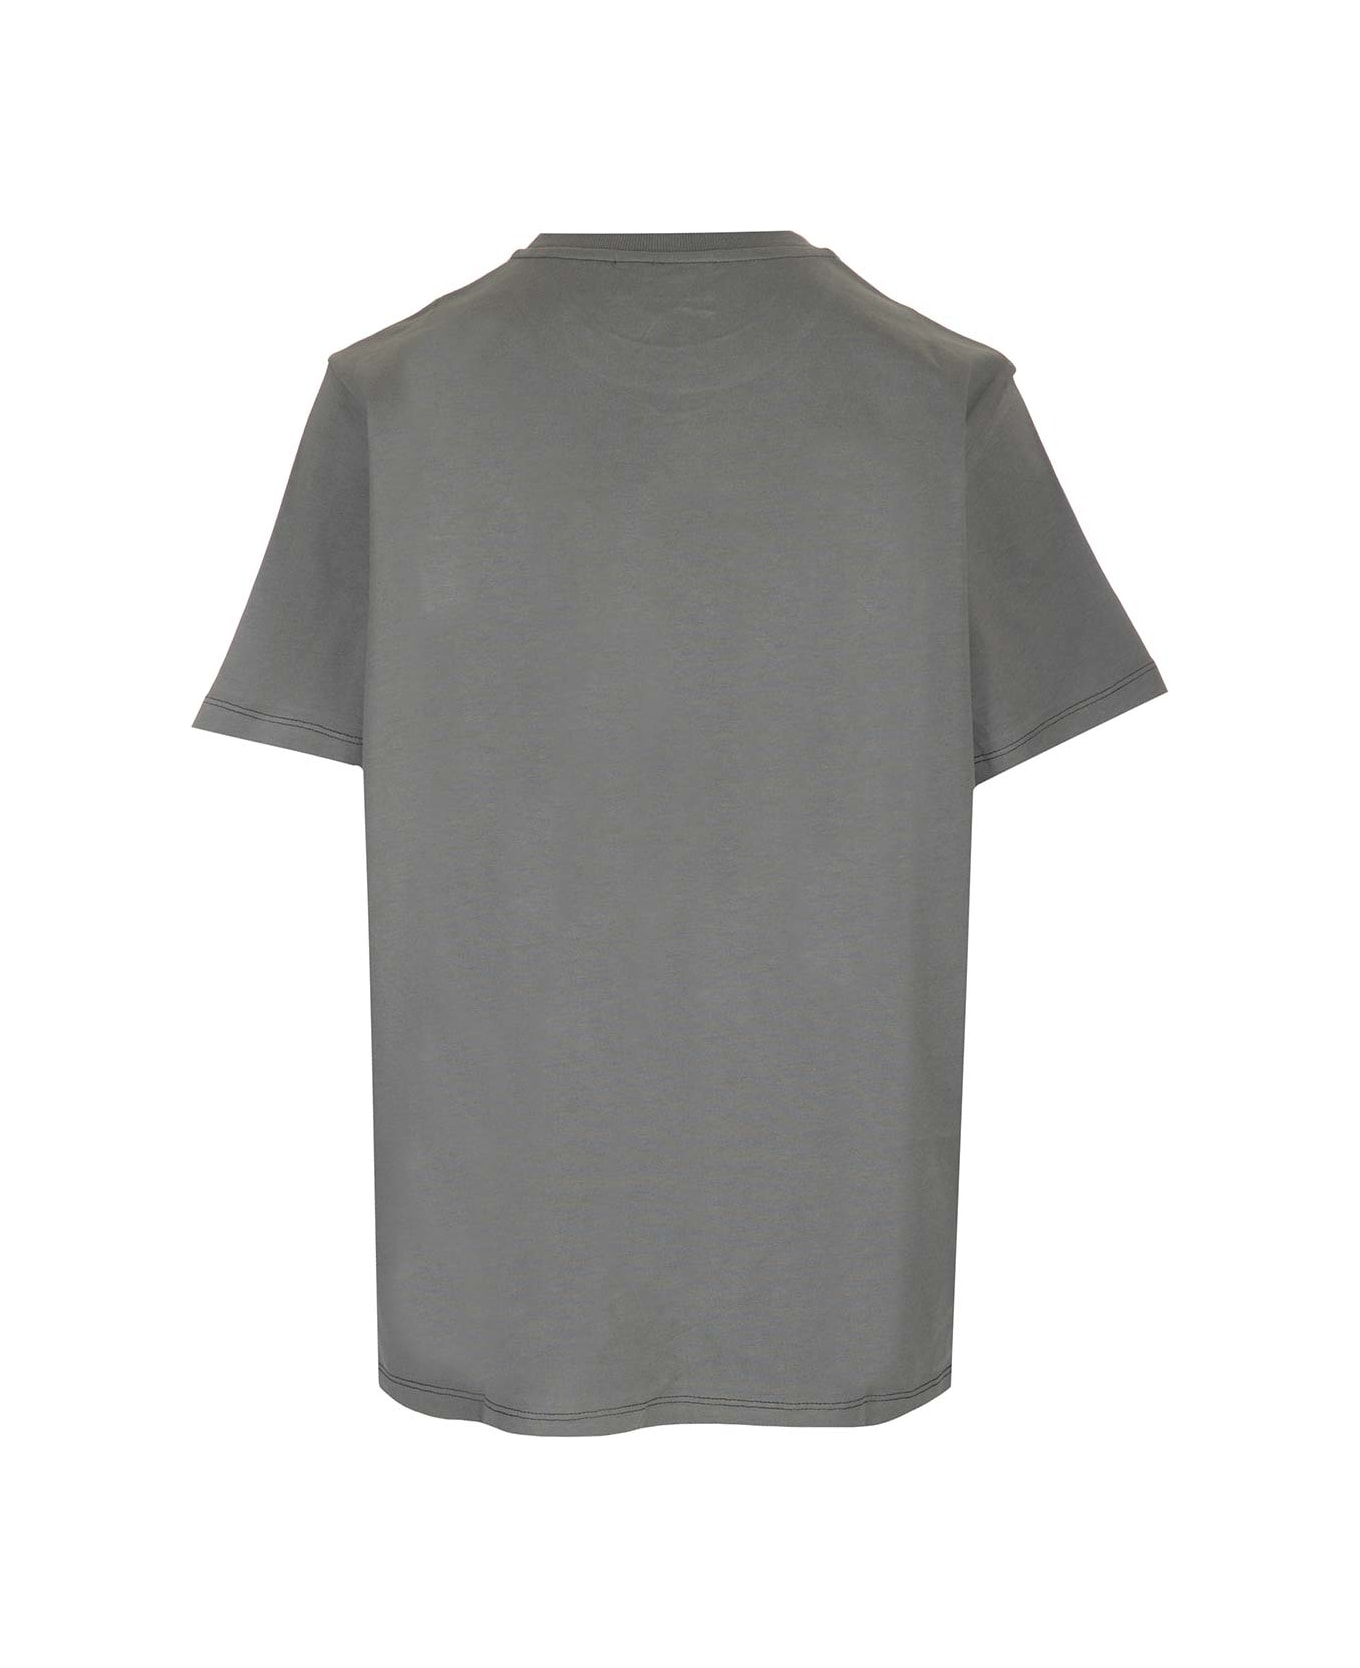 Ganni Grey T-shirt With Heart - Grigio